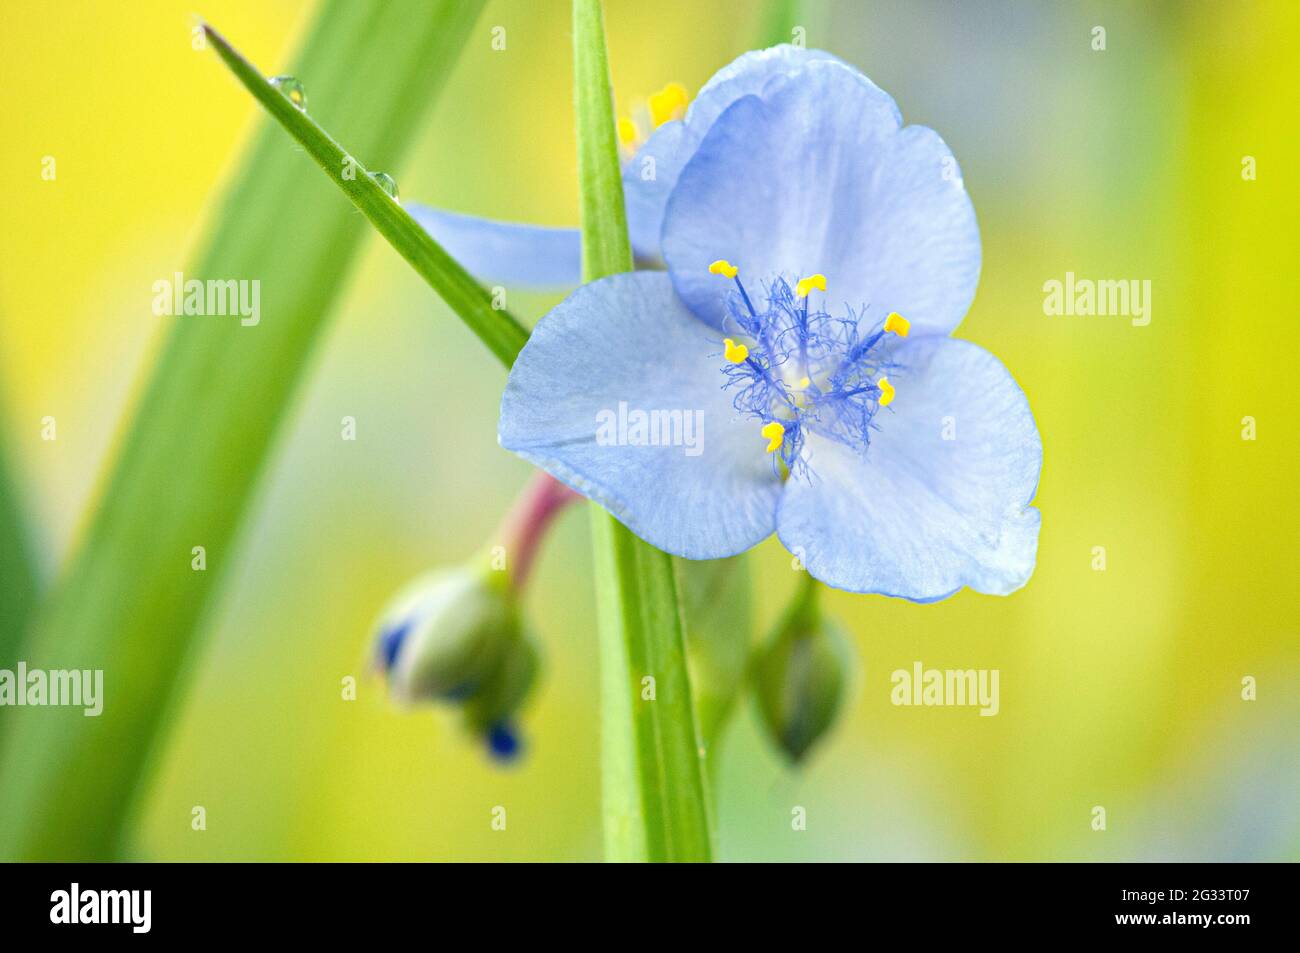 Spiderwort flower Stock Photo